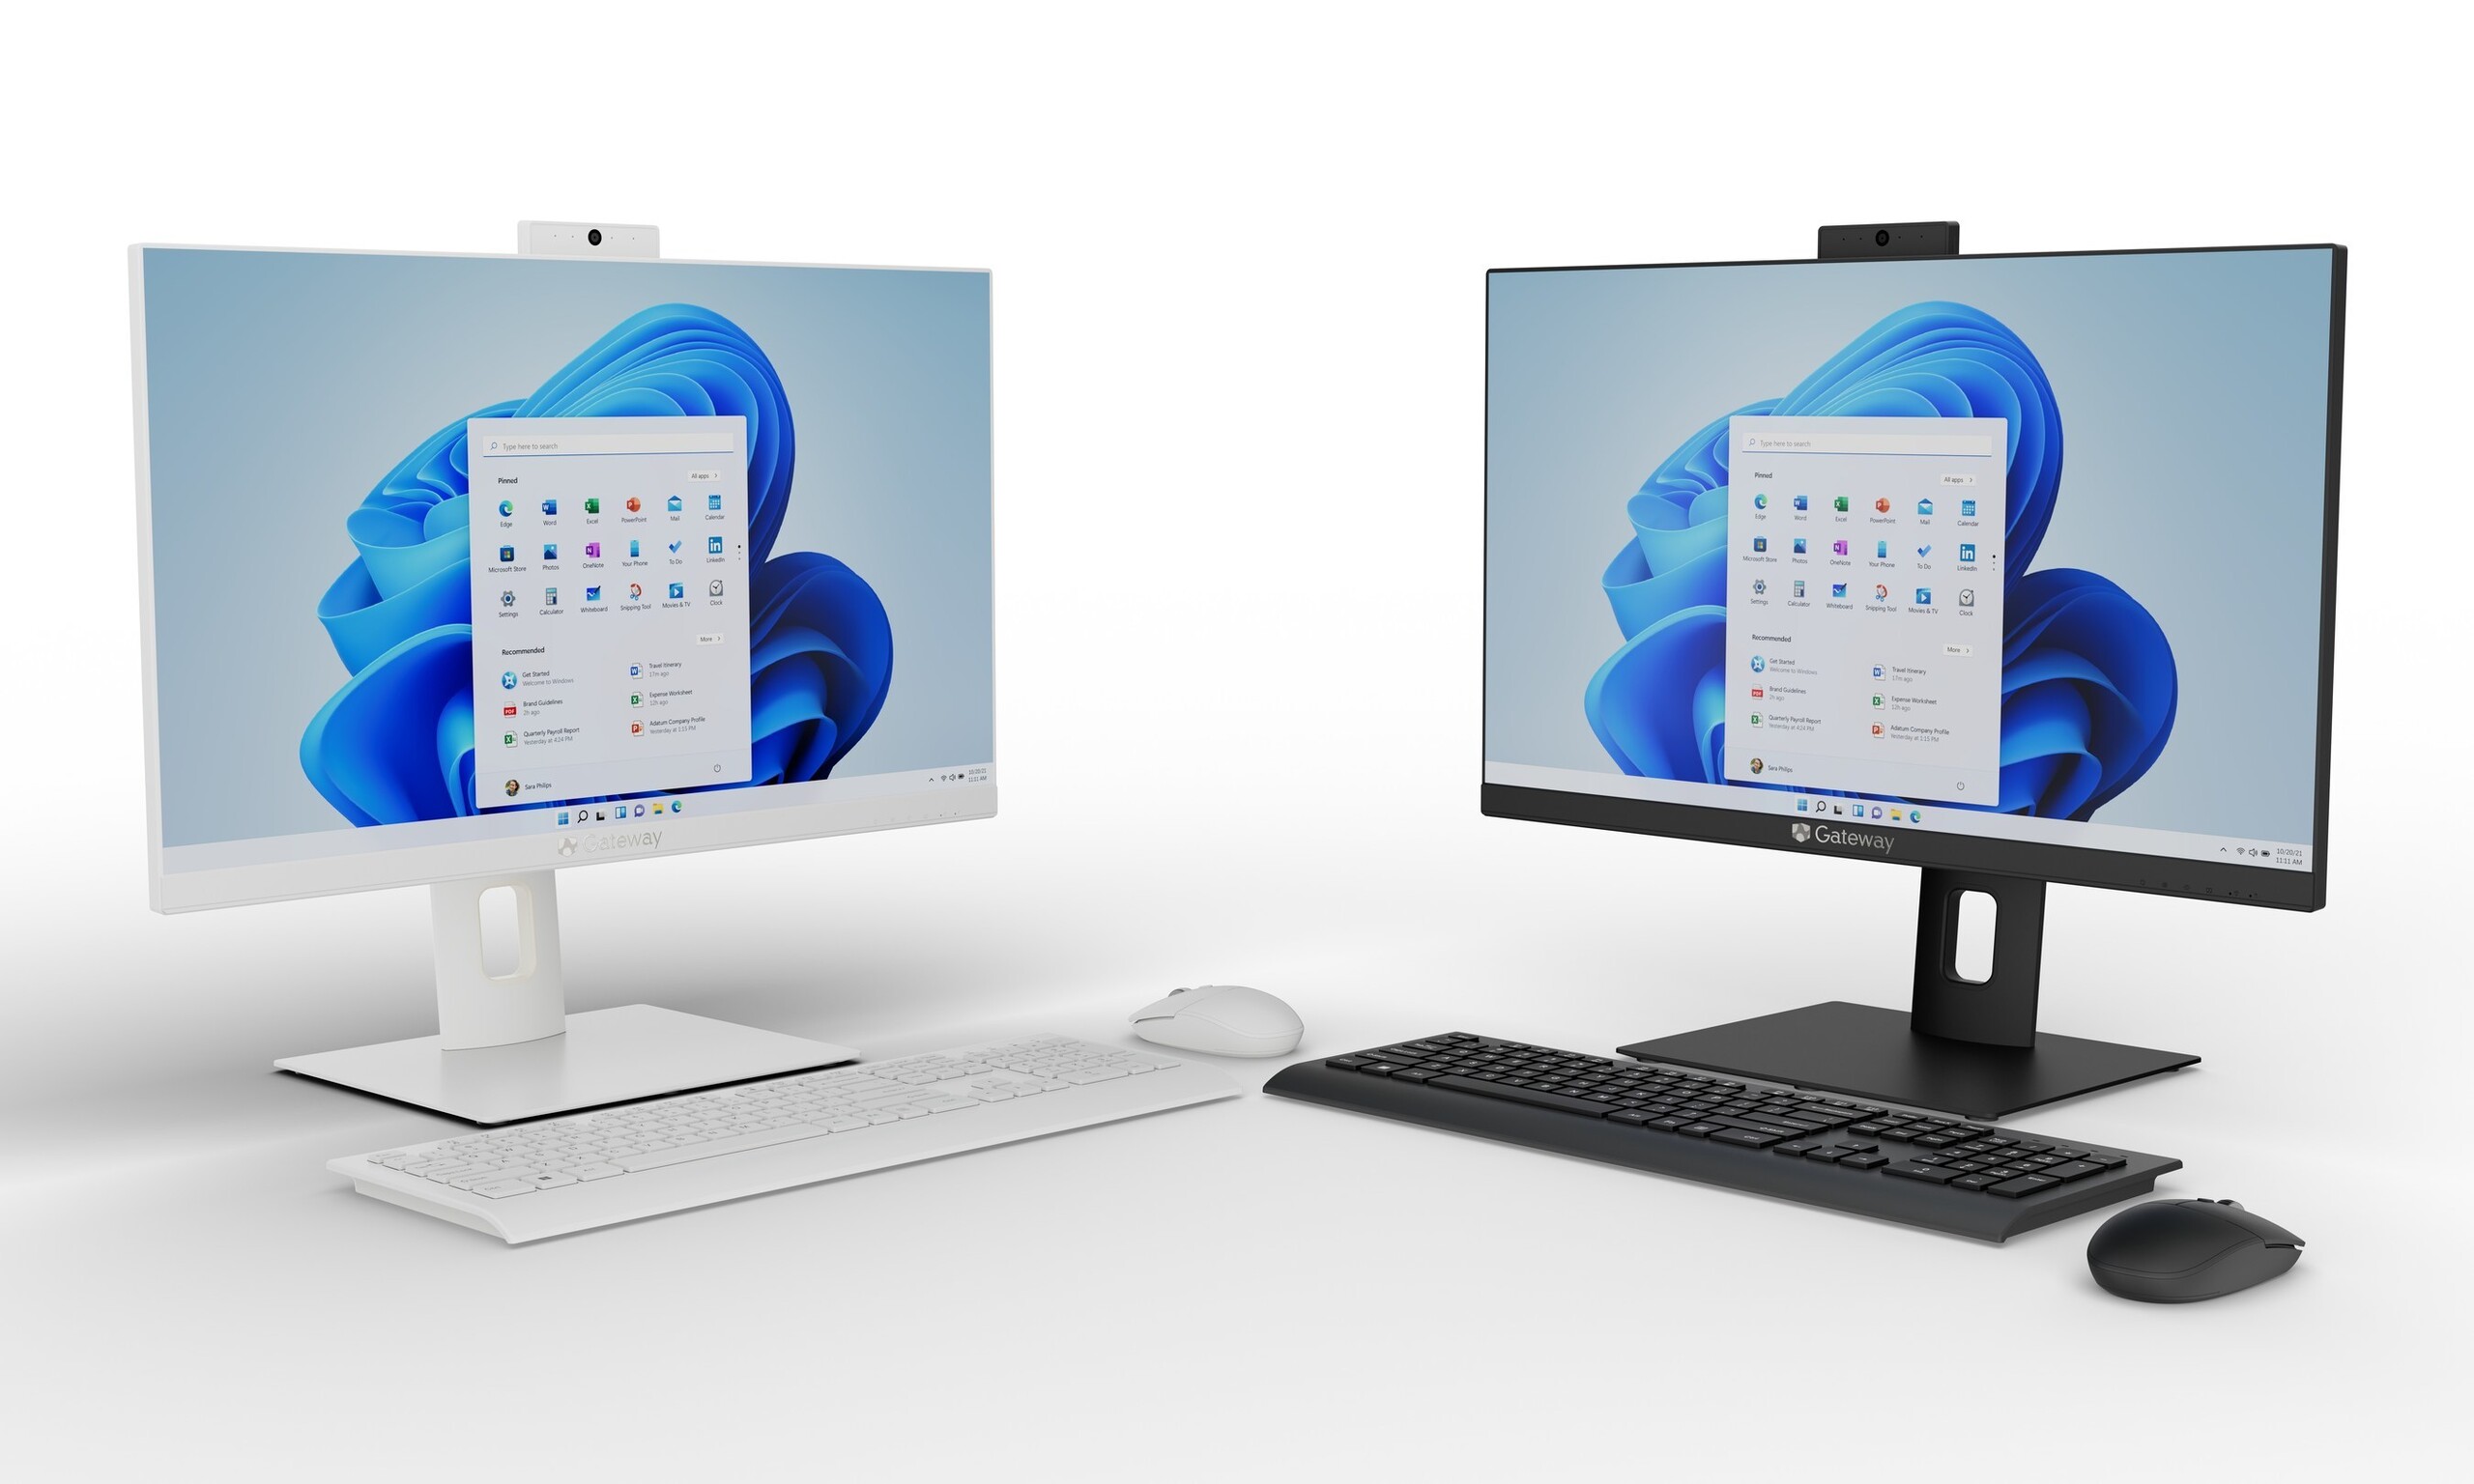 Gateway lance un nouveau PC tout-en-un abordable via Walmart -   News